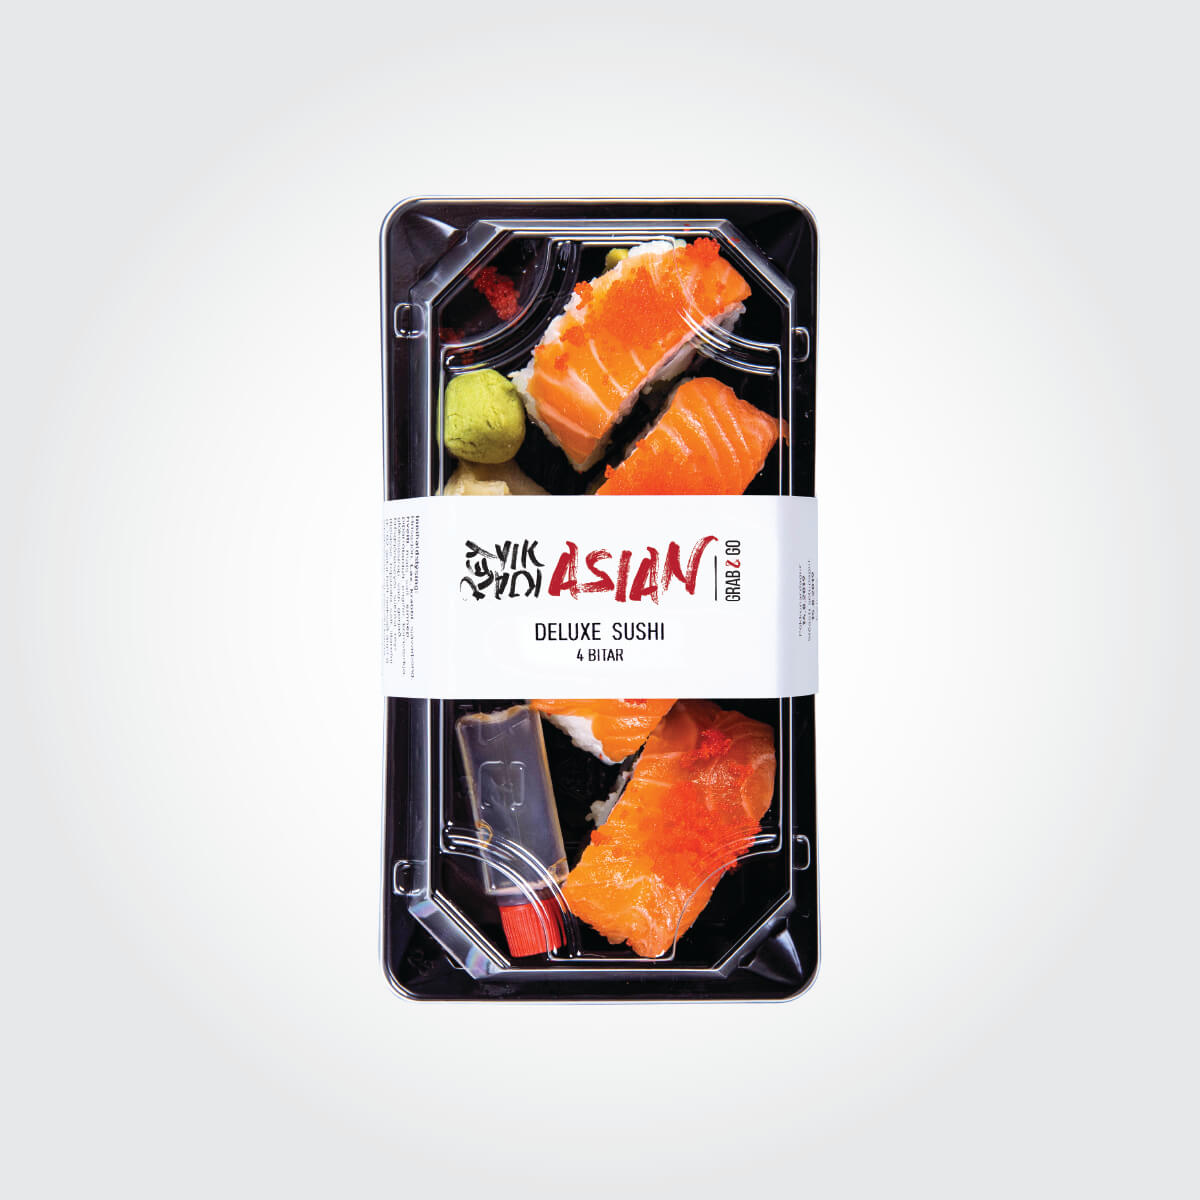 Deluxe sushi - 4 bitar - Reykjavík Asian